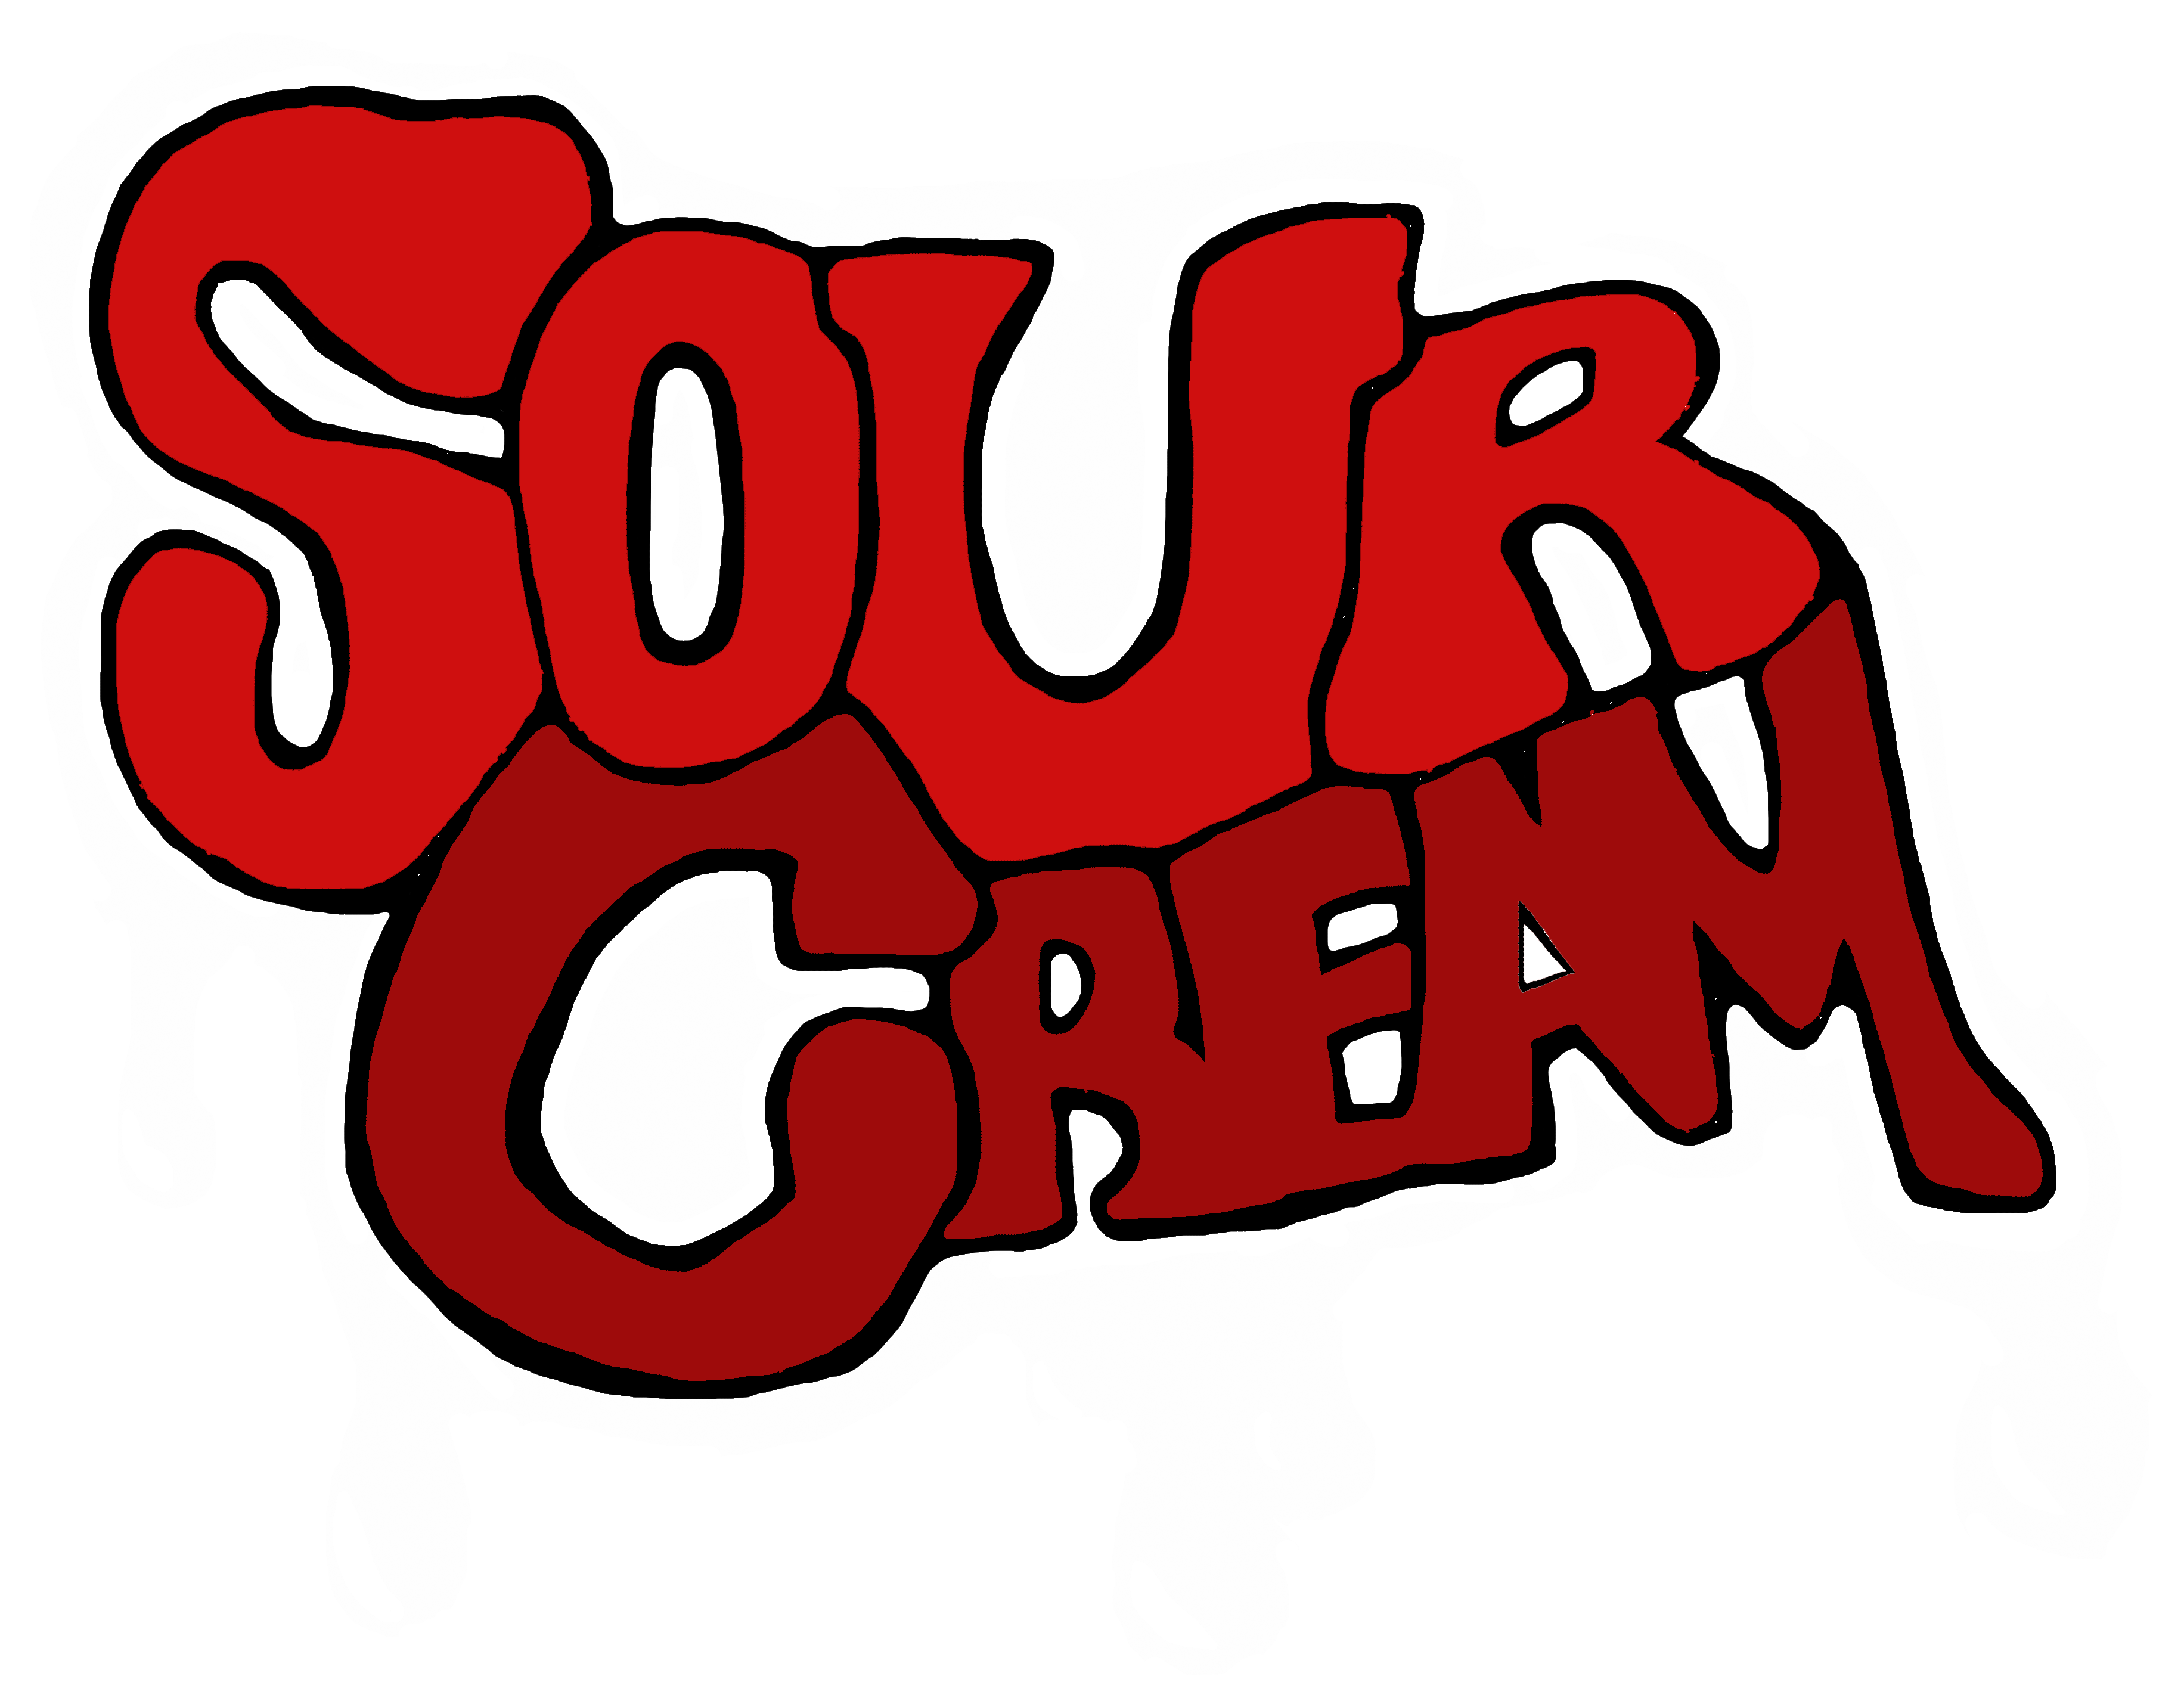 Sour Cream - Sour Cream (4200x3142)